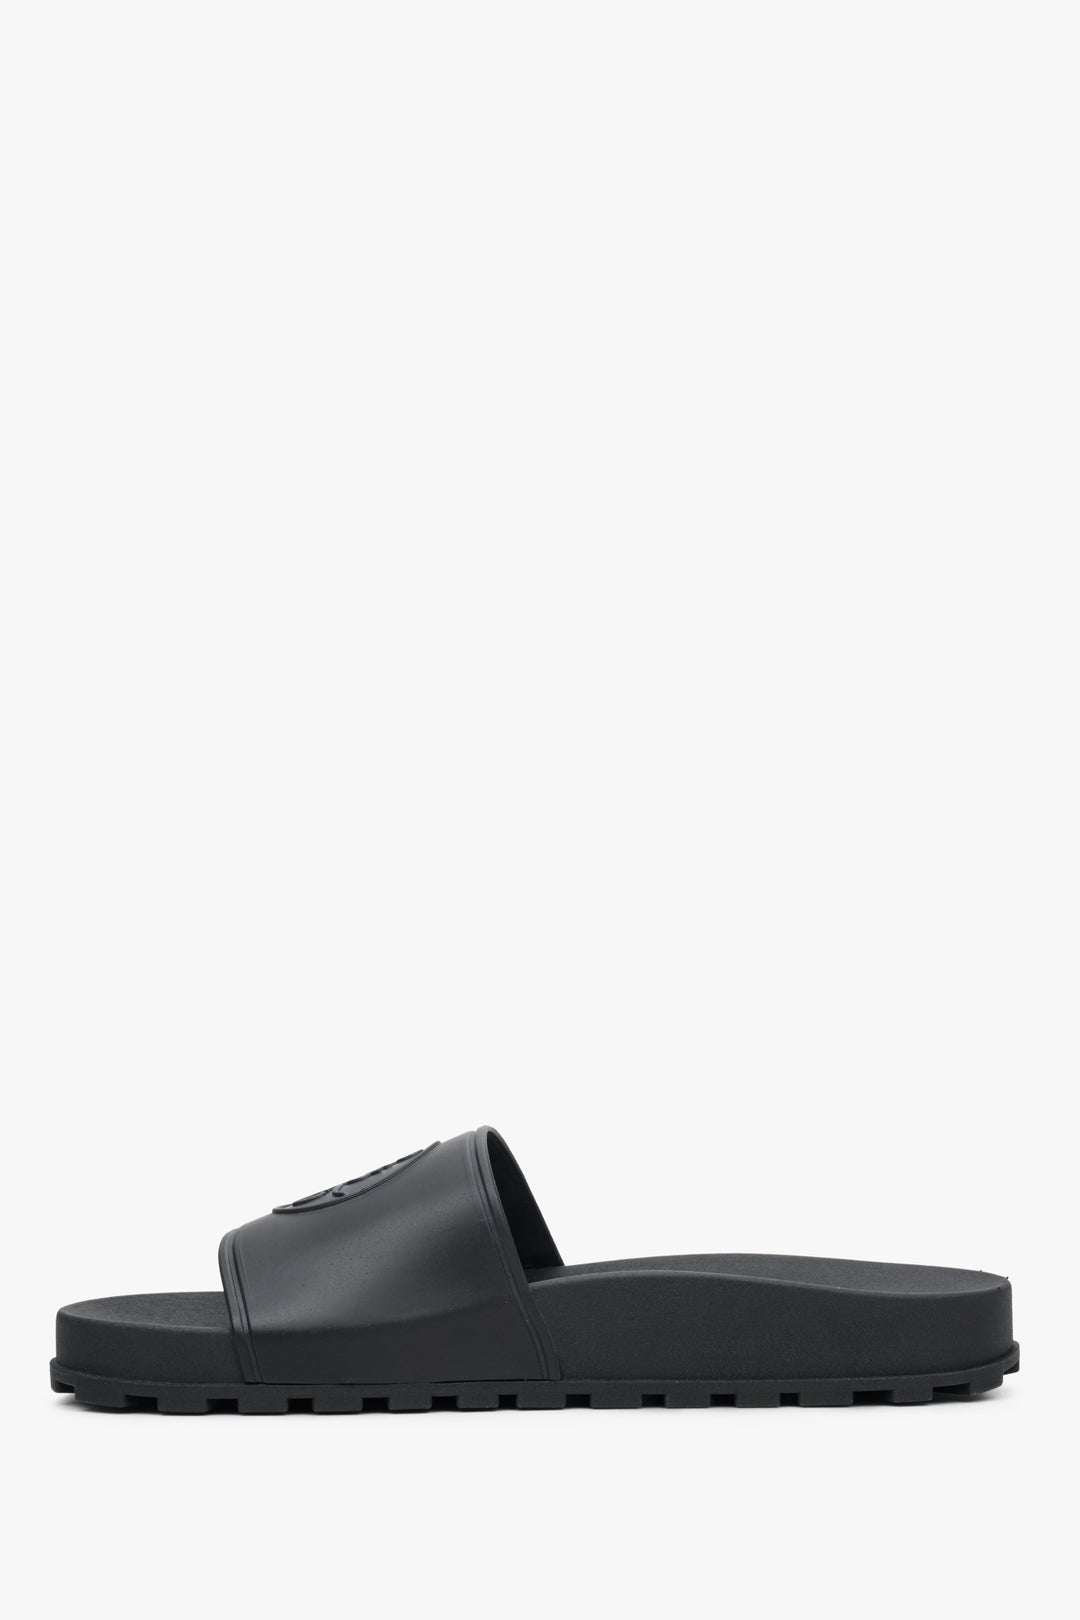 Women's black Estro rubber flip-Flops - shoe profile.